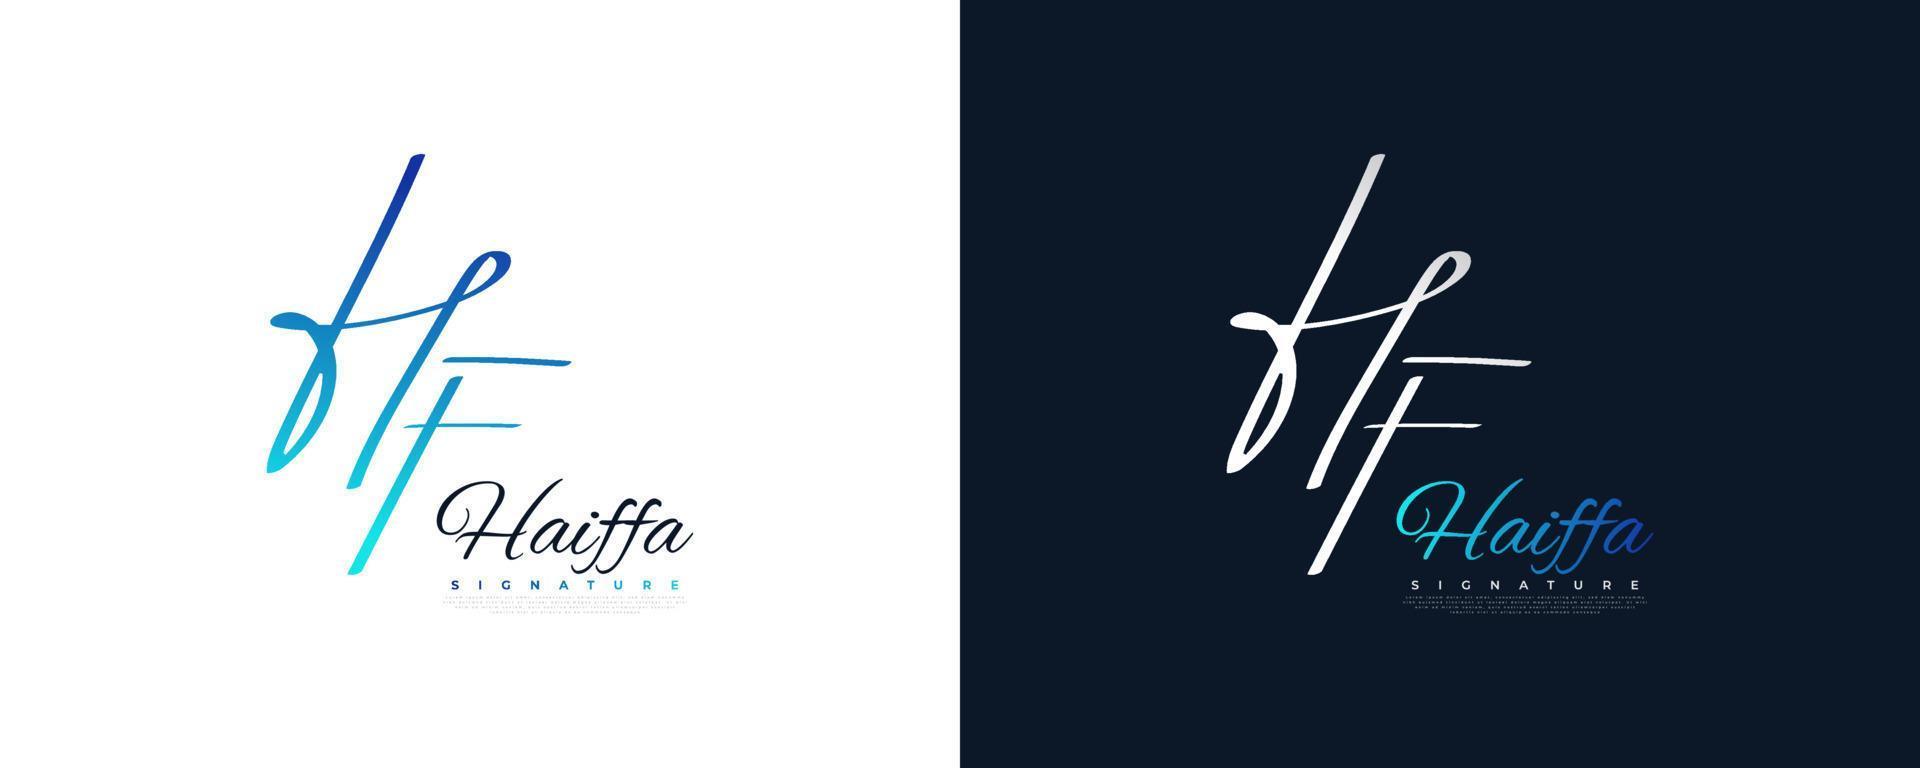 design del logo iniziale h e f con uno stile di scrittura elegante e minimalista. logo o simbolo della firma hf per matrimonio, moda, gioielli, boutique e identità aziendale vettore